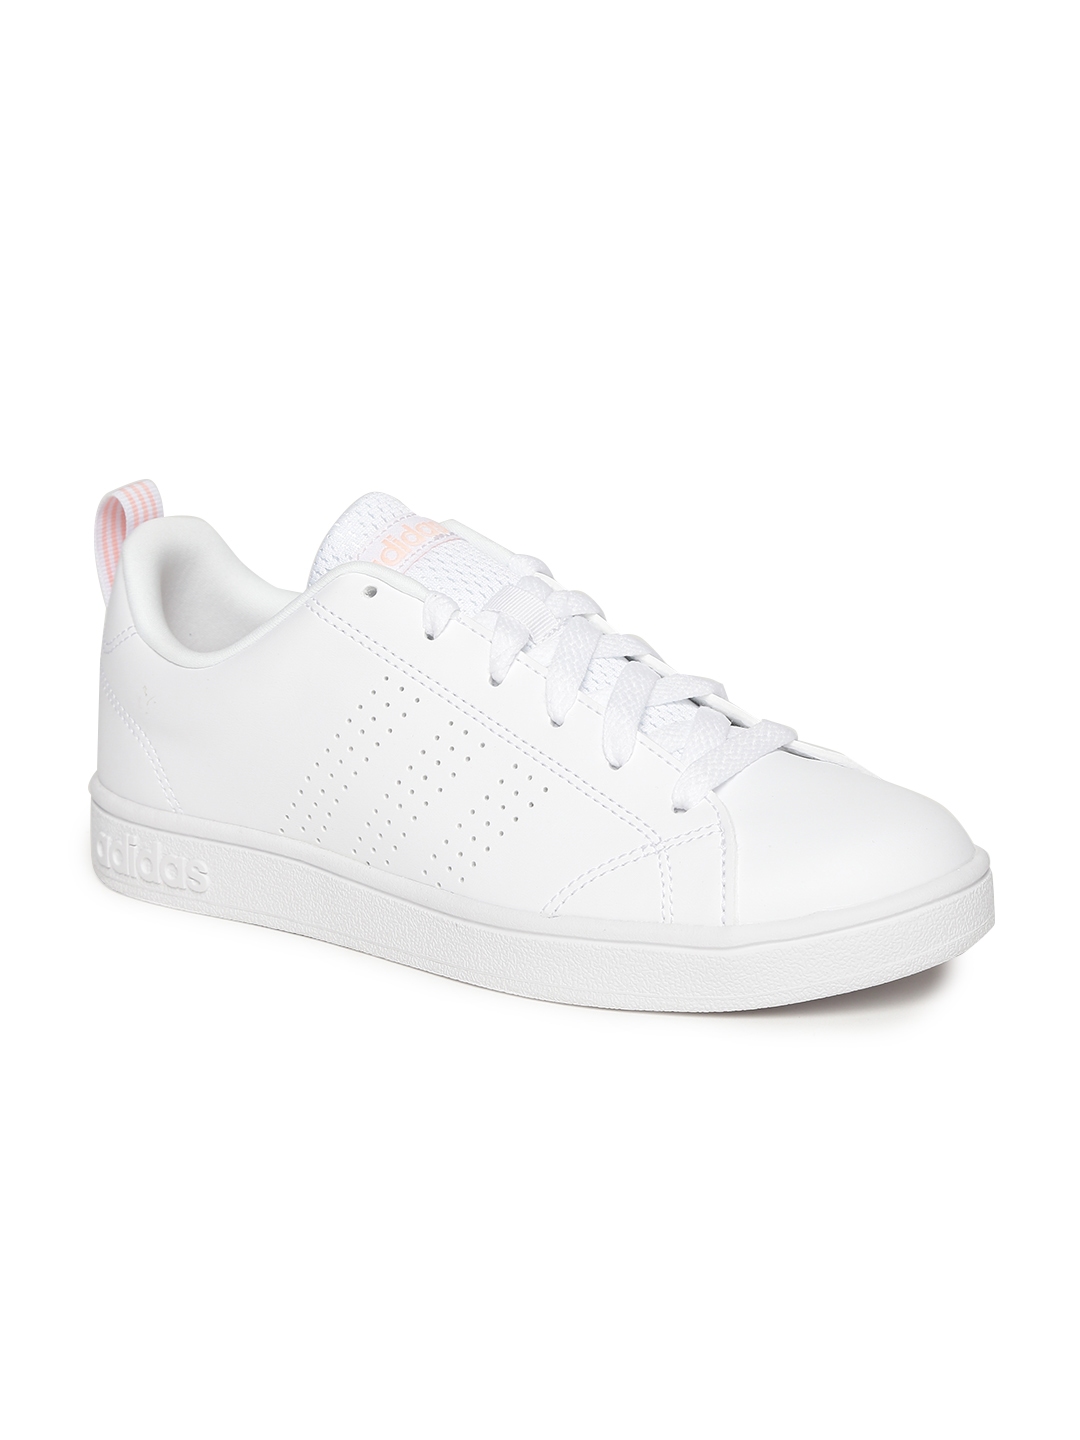 adidas female white shoes